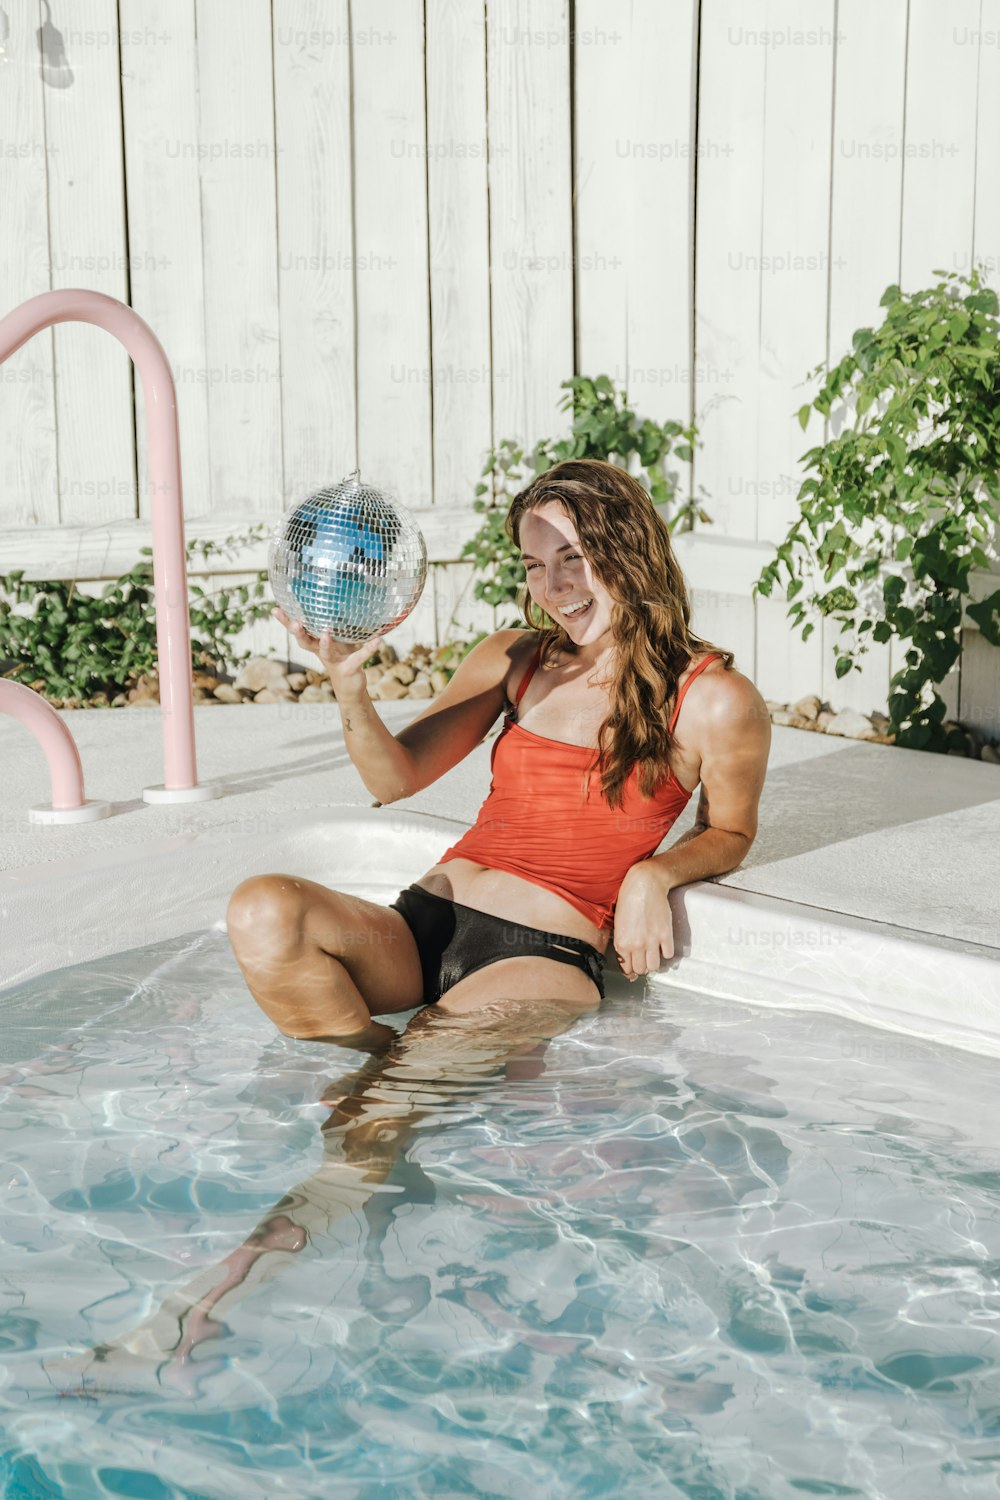 Une femme assise dans une piscine tenant une boule disco